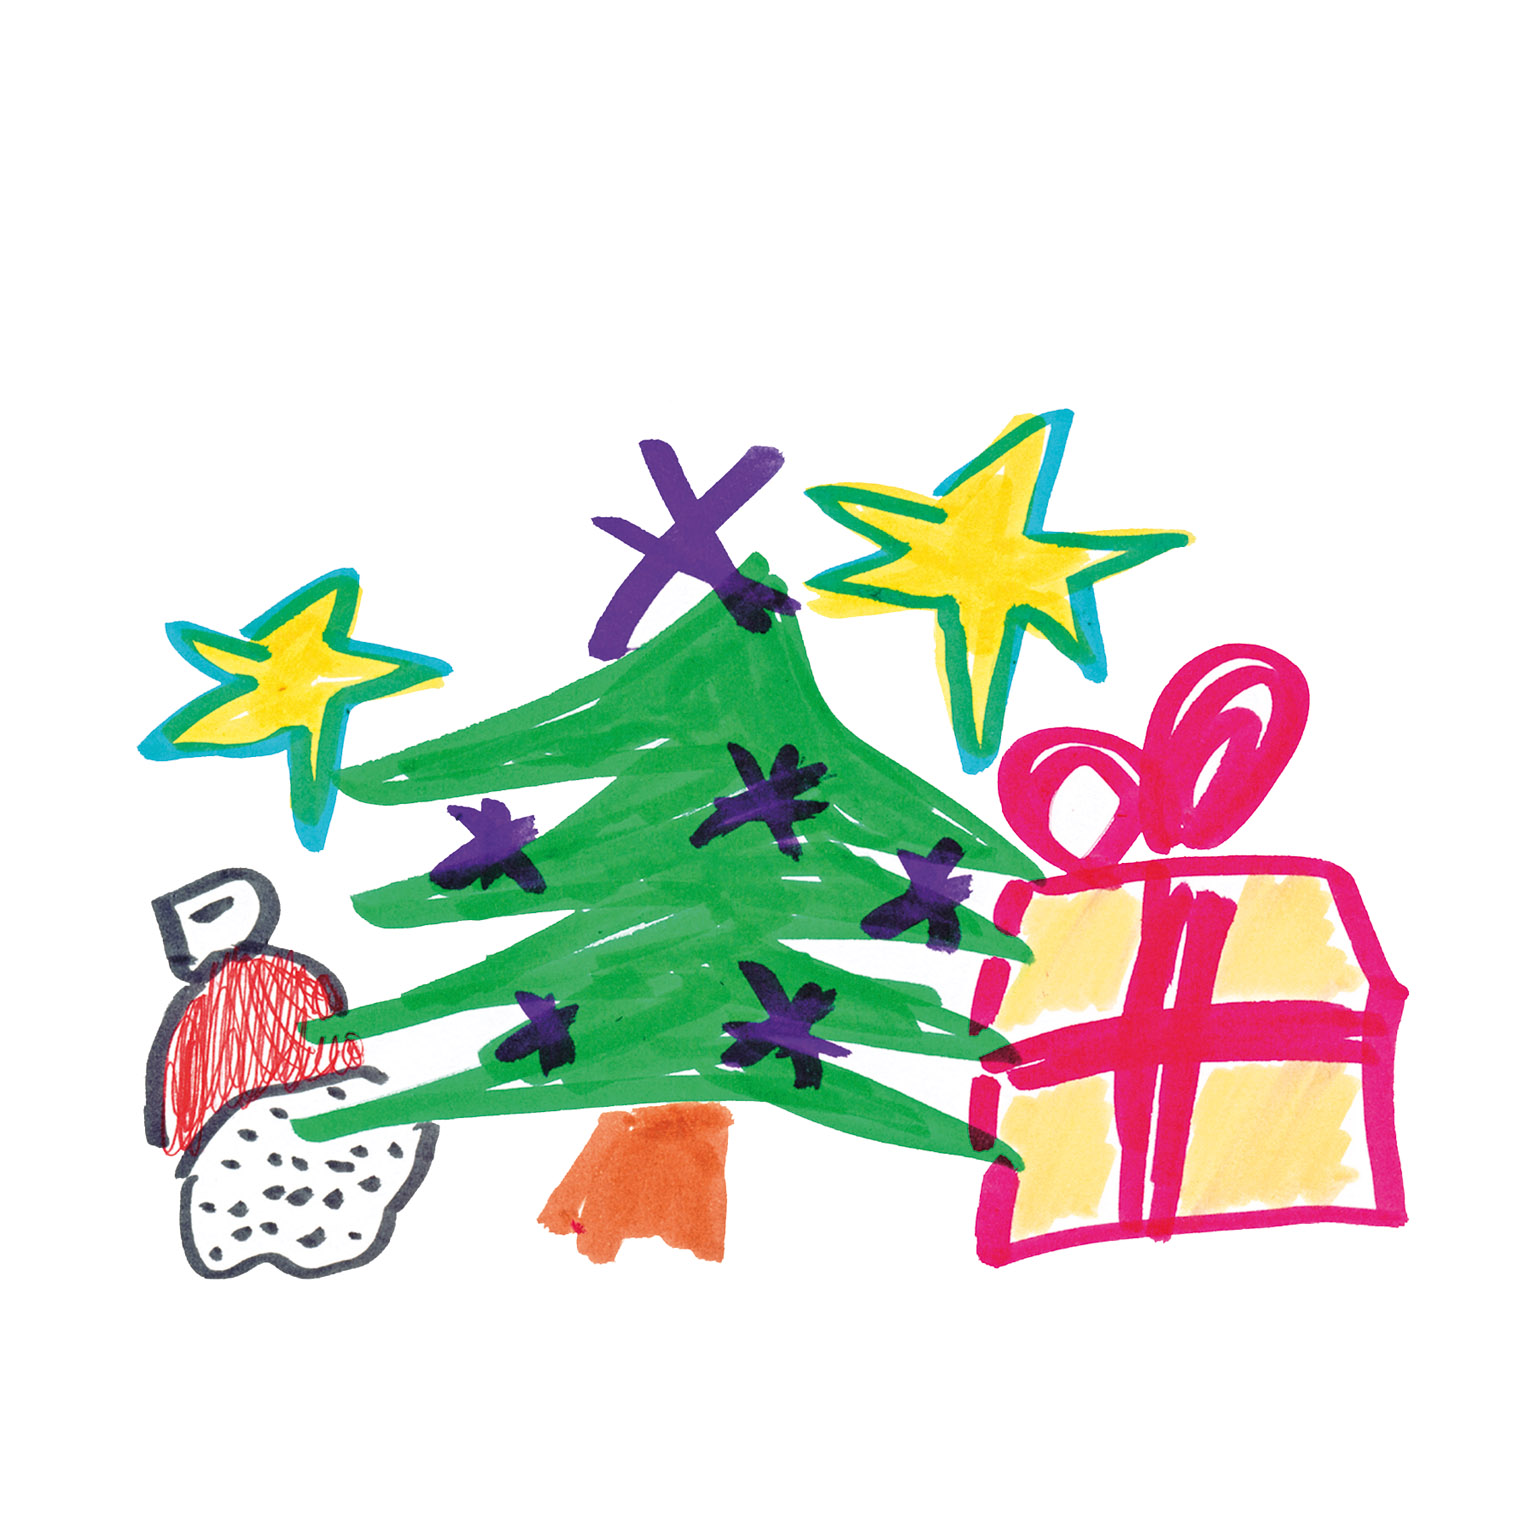 Kinder malen ihren Weihnachtswunsch